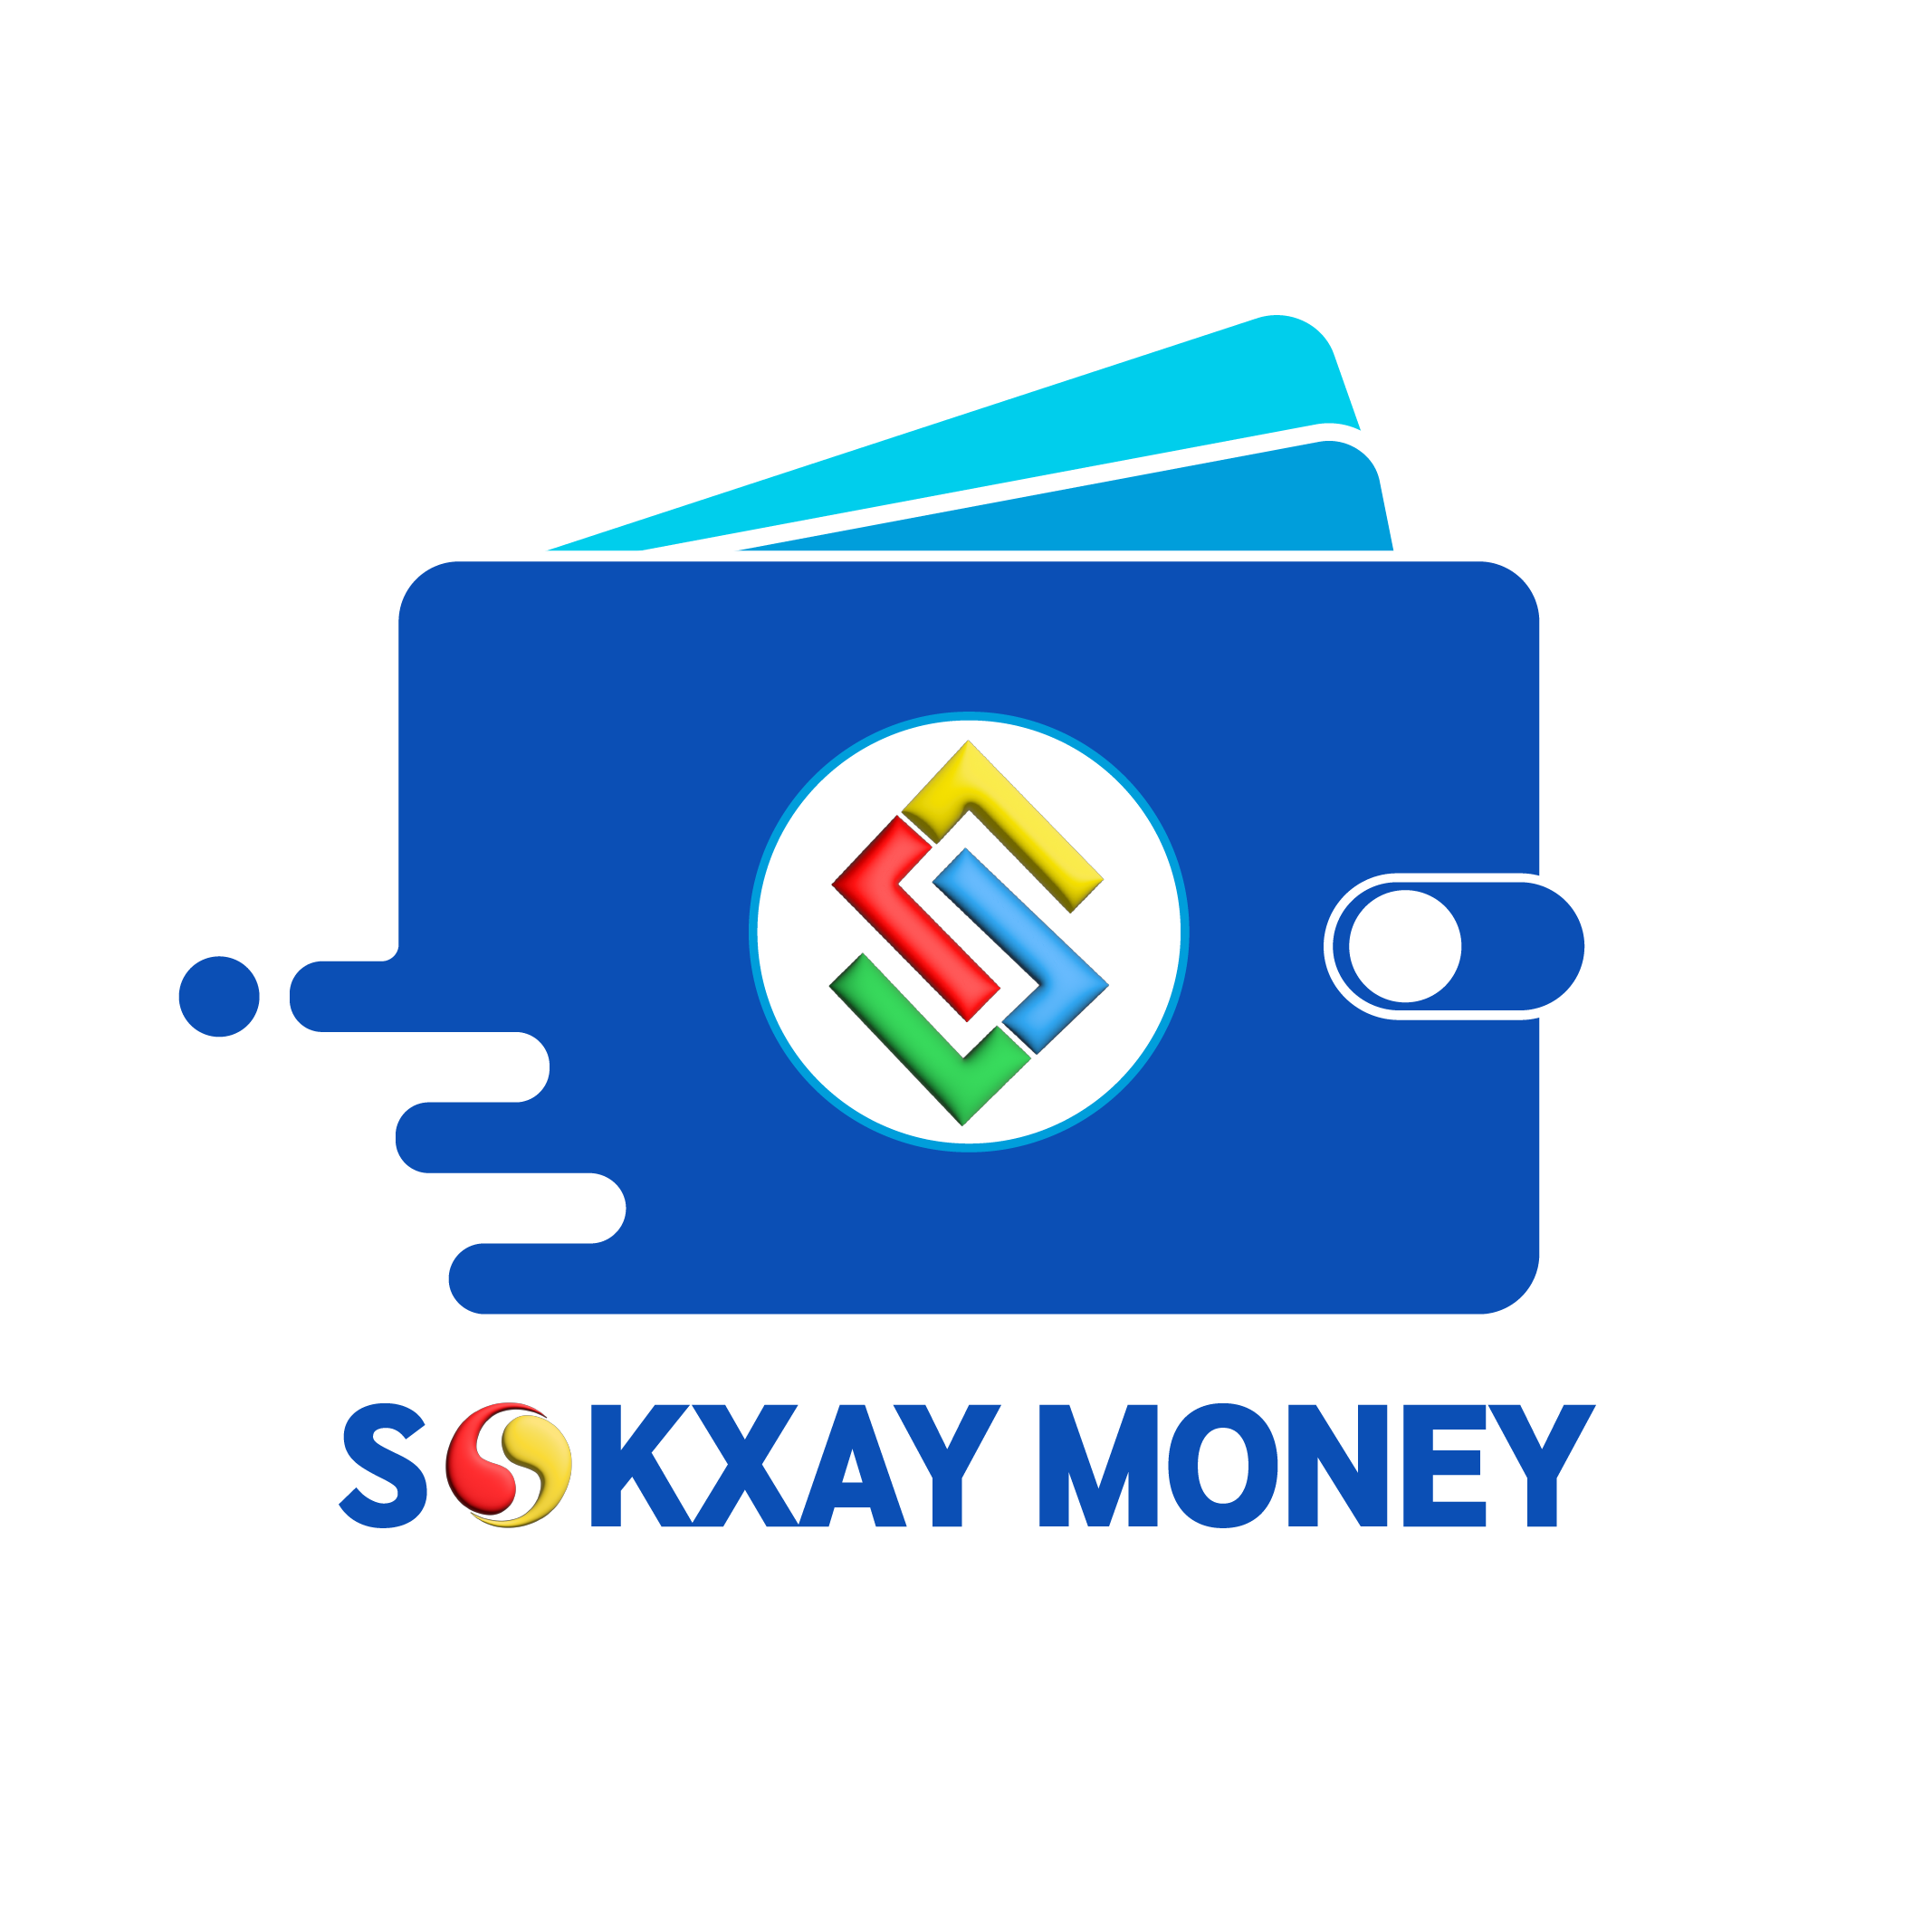 S money logo